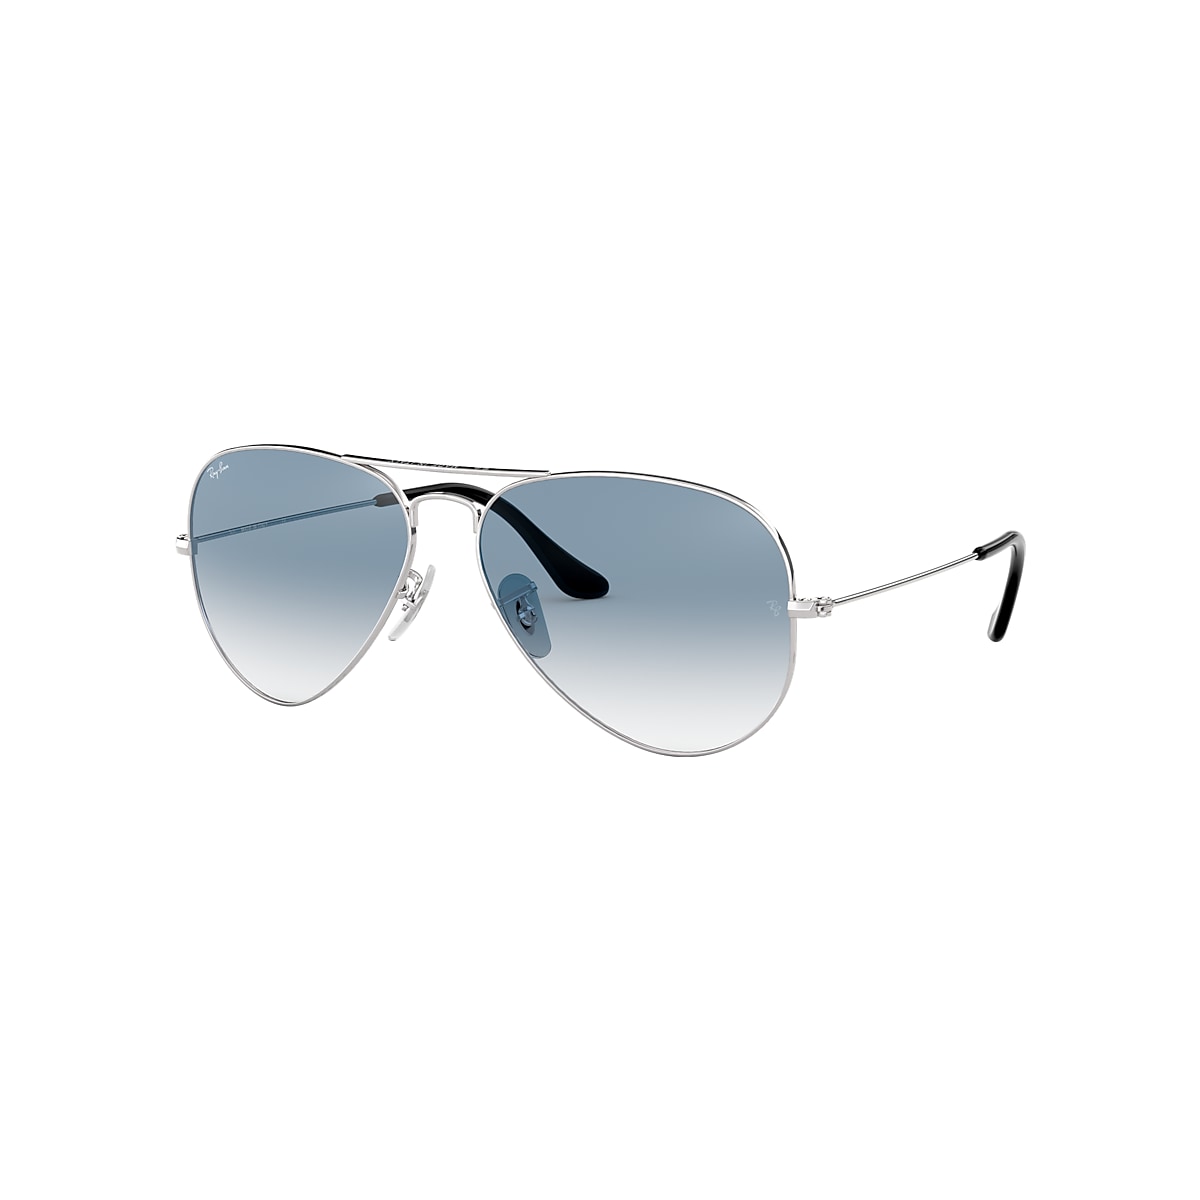 Notorio patrocinador personalizado Gafas de Sol Aviator Gradient en Plateado y Azul Claro | Ray-Ban®